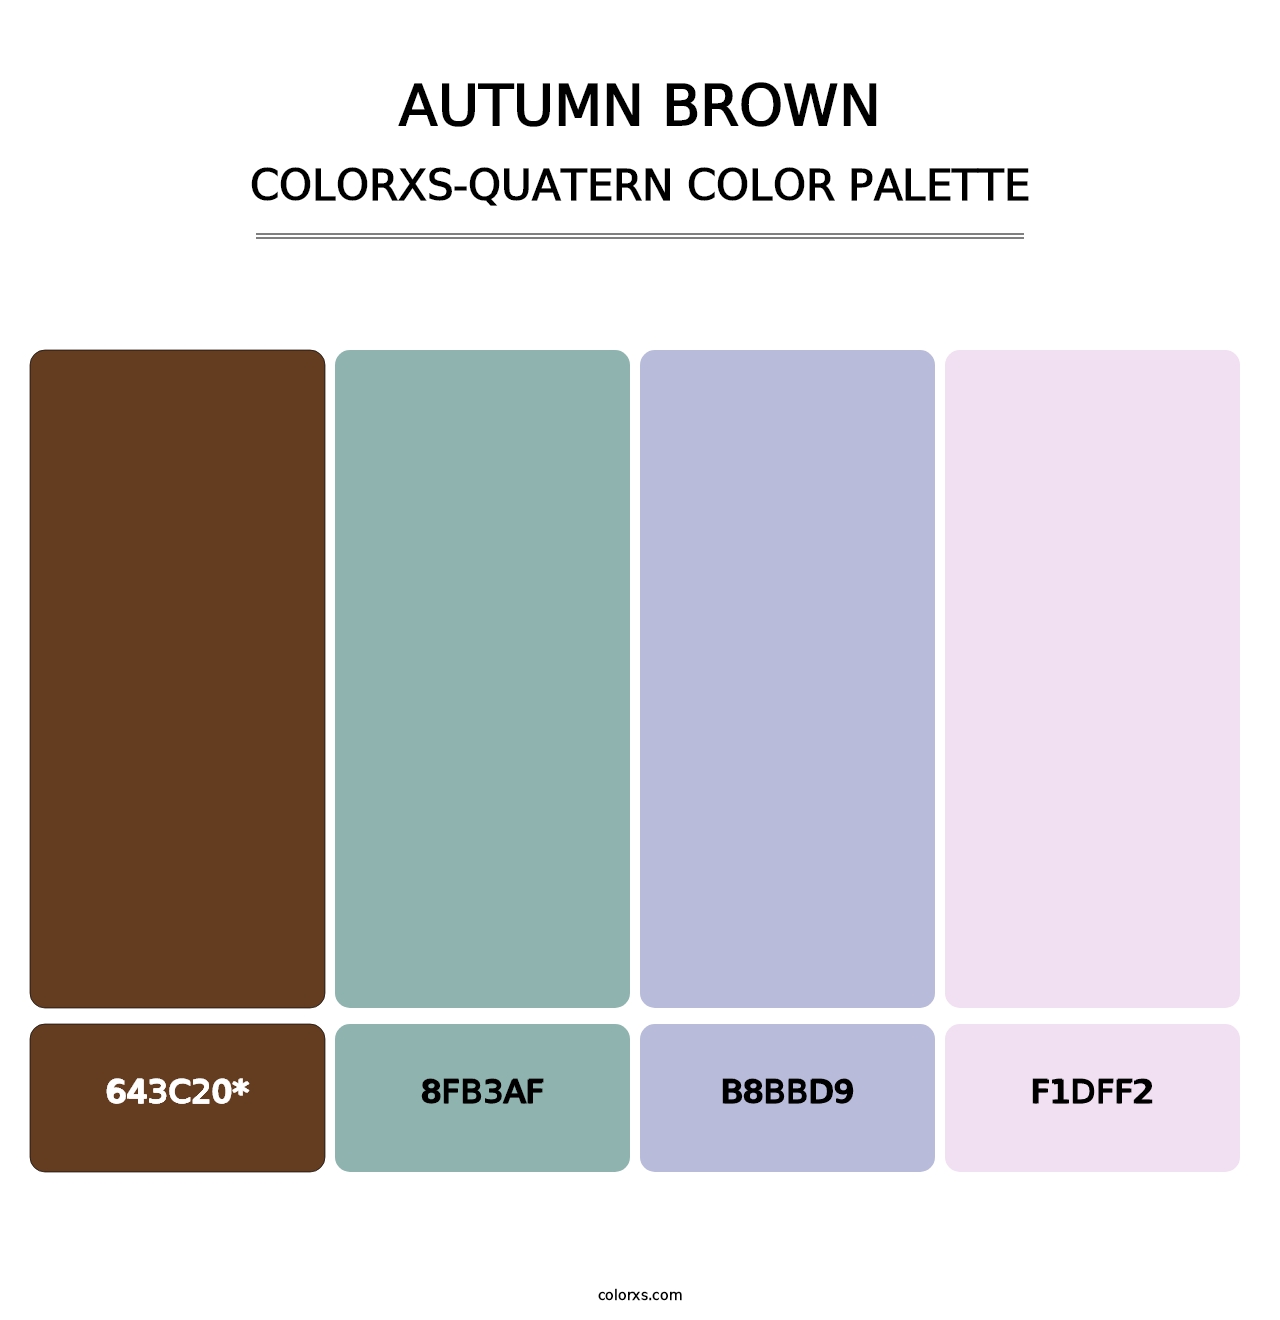 Autumn Brown - Colorxs Quatern Palette